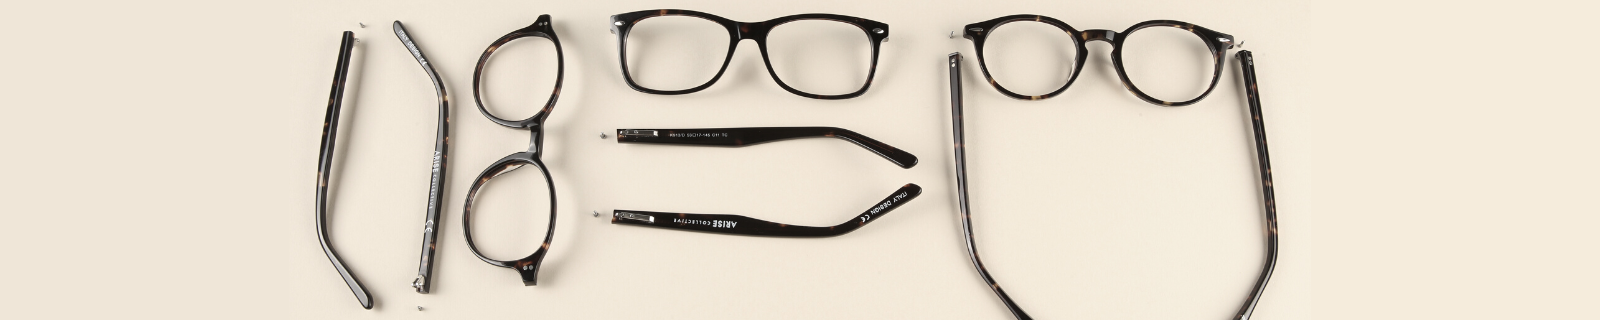 Virksomhedsbeskrivelse operation pisk Parts of Glasses | Glasses Anatomy | SmartBuyGlasses